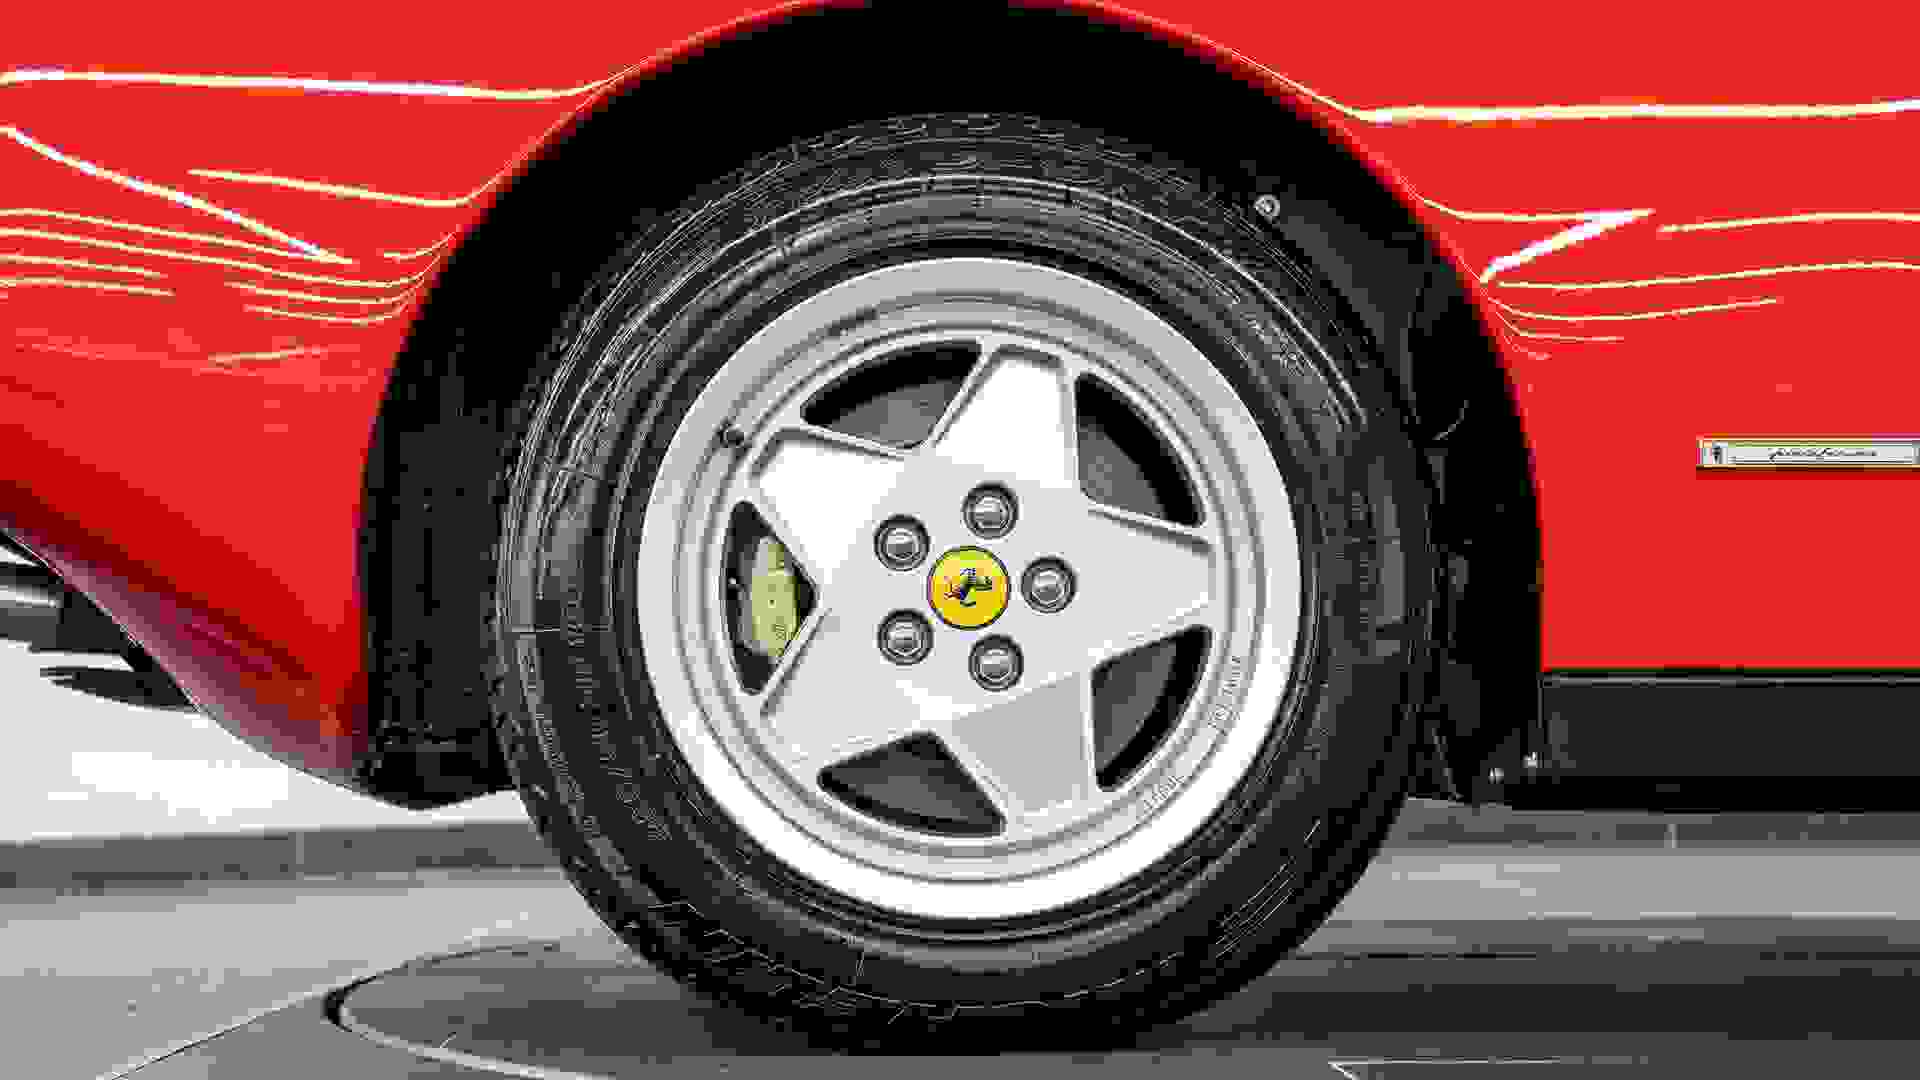 Ferrari Testarossa Photo dc3b2d50-7b0c-41c1-95a1-f773b430db3b.jpg